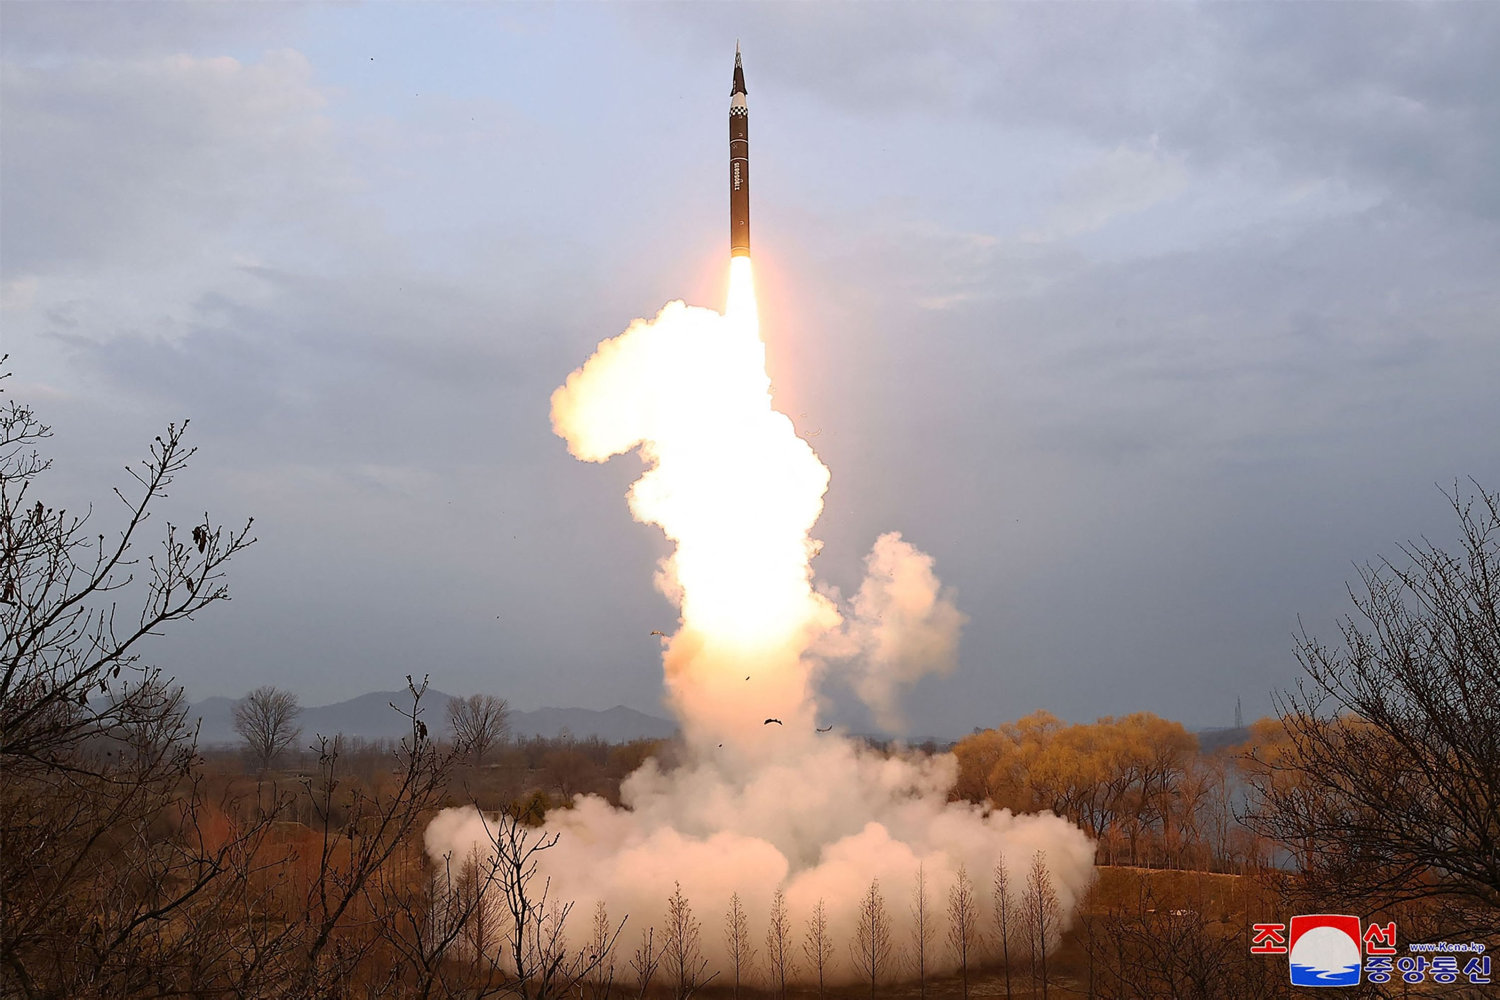 nabolande melder om affyring af missiler fra nordkorea